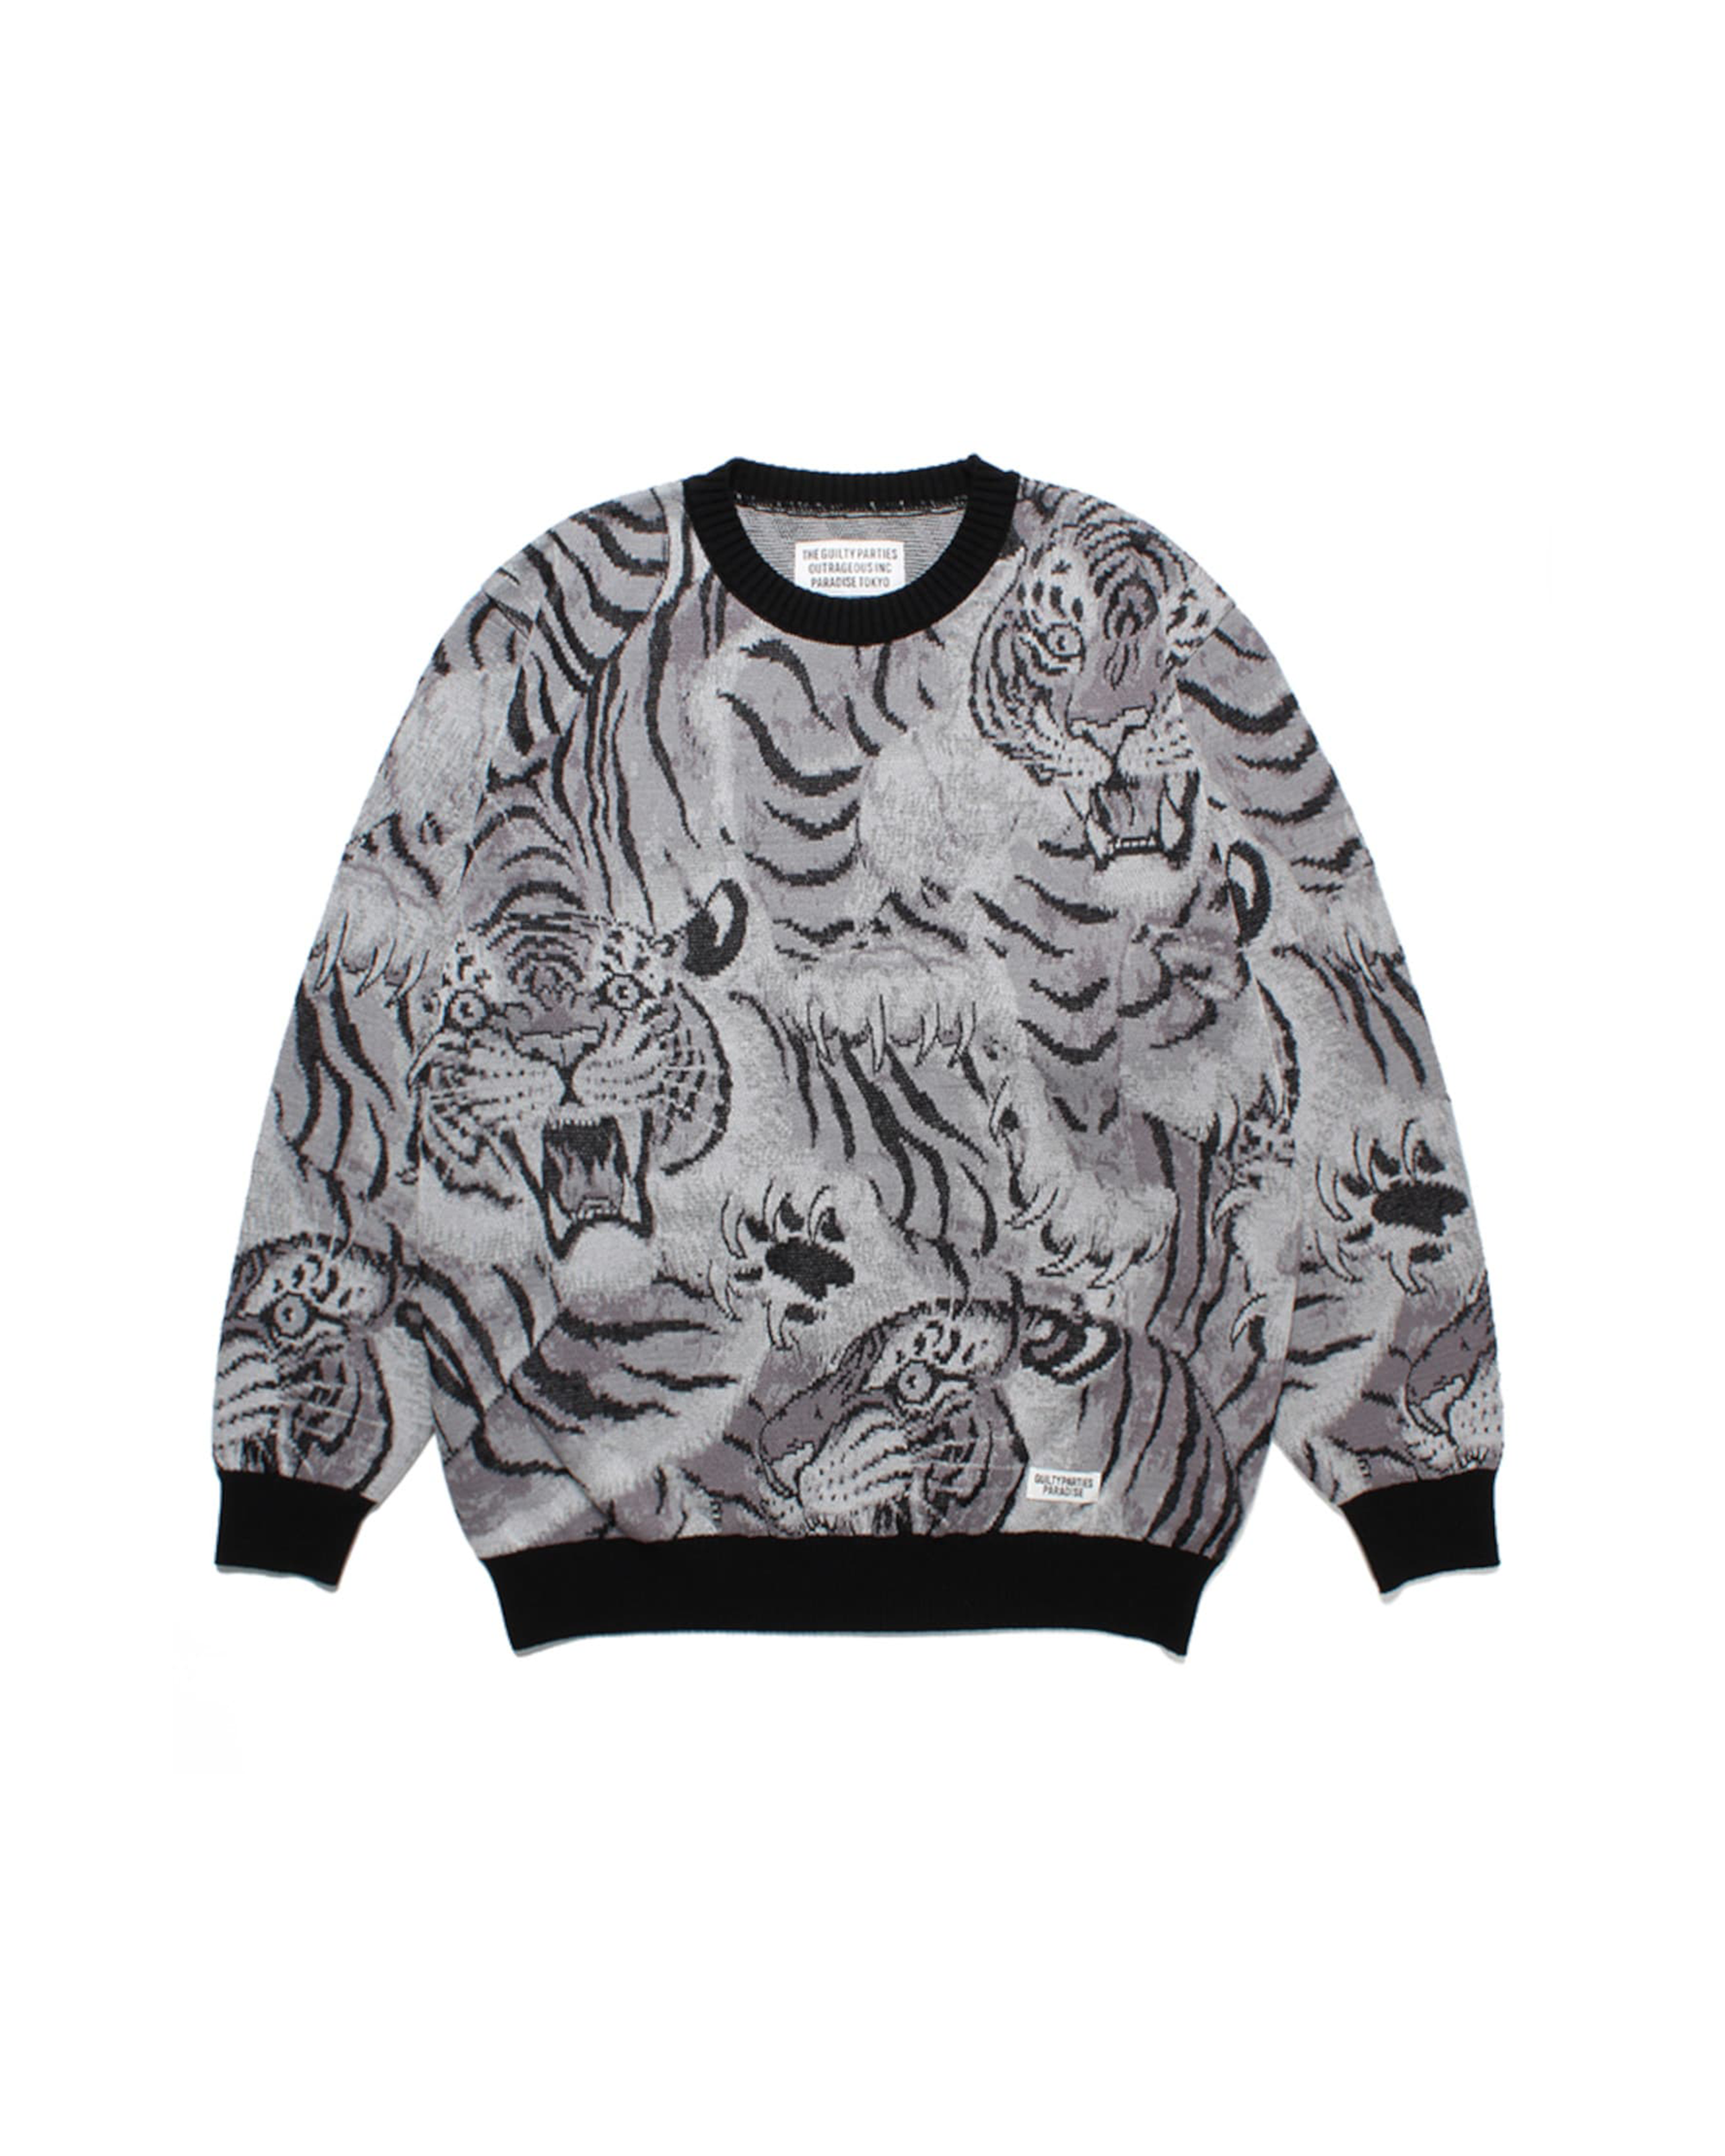 Tim Lehi Jacquard Sweater - Grey